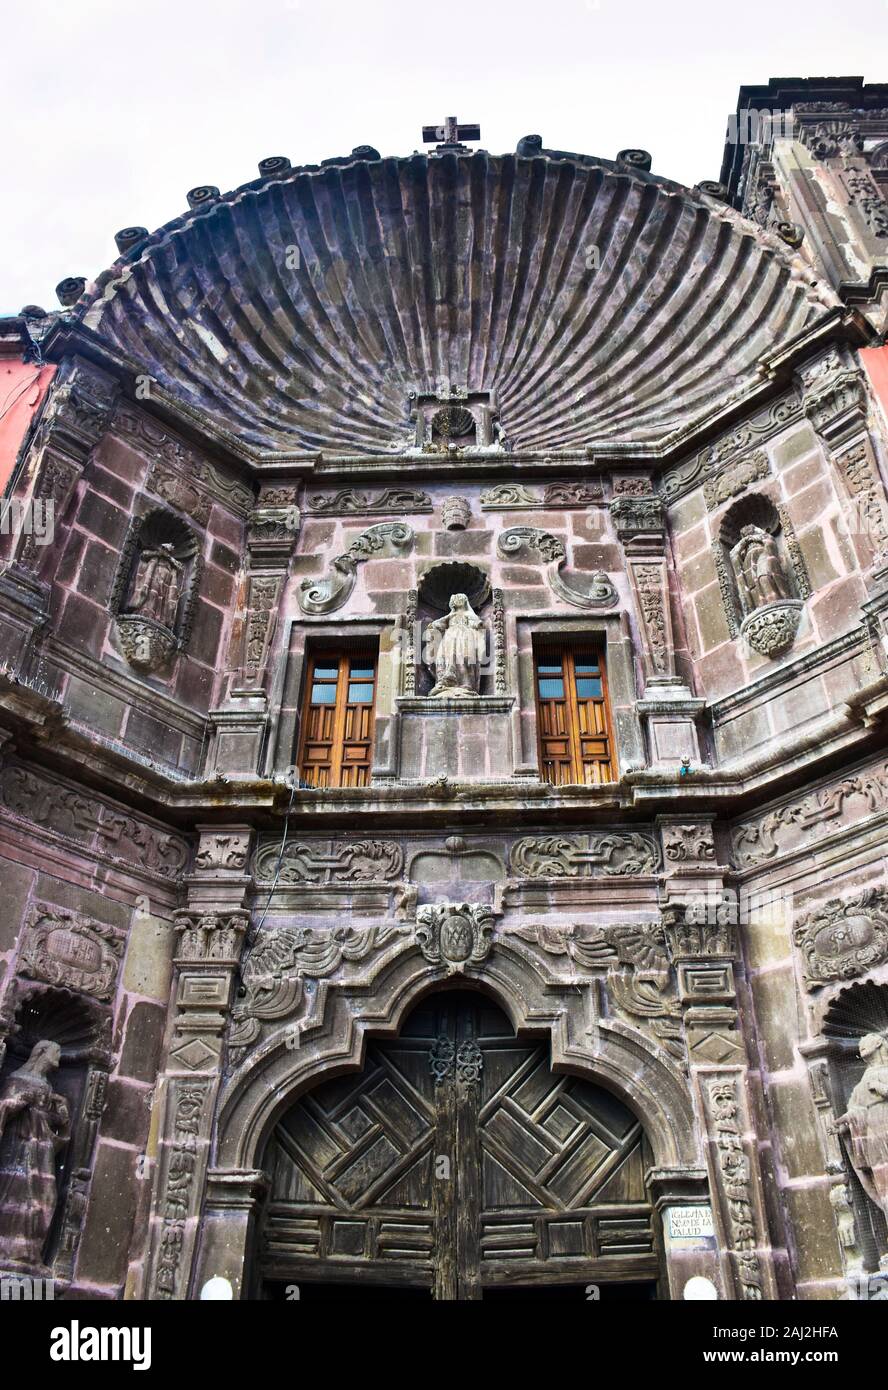 Templo de Nuestra Senora de la Salud built in 1735, San Miguel de Allende, Mexico Stock Photo